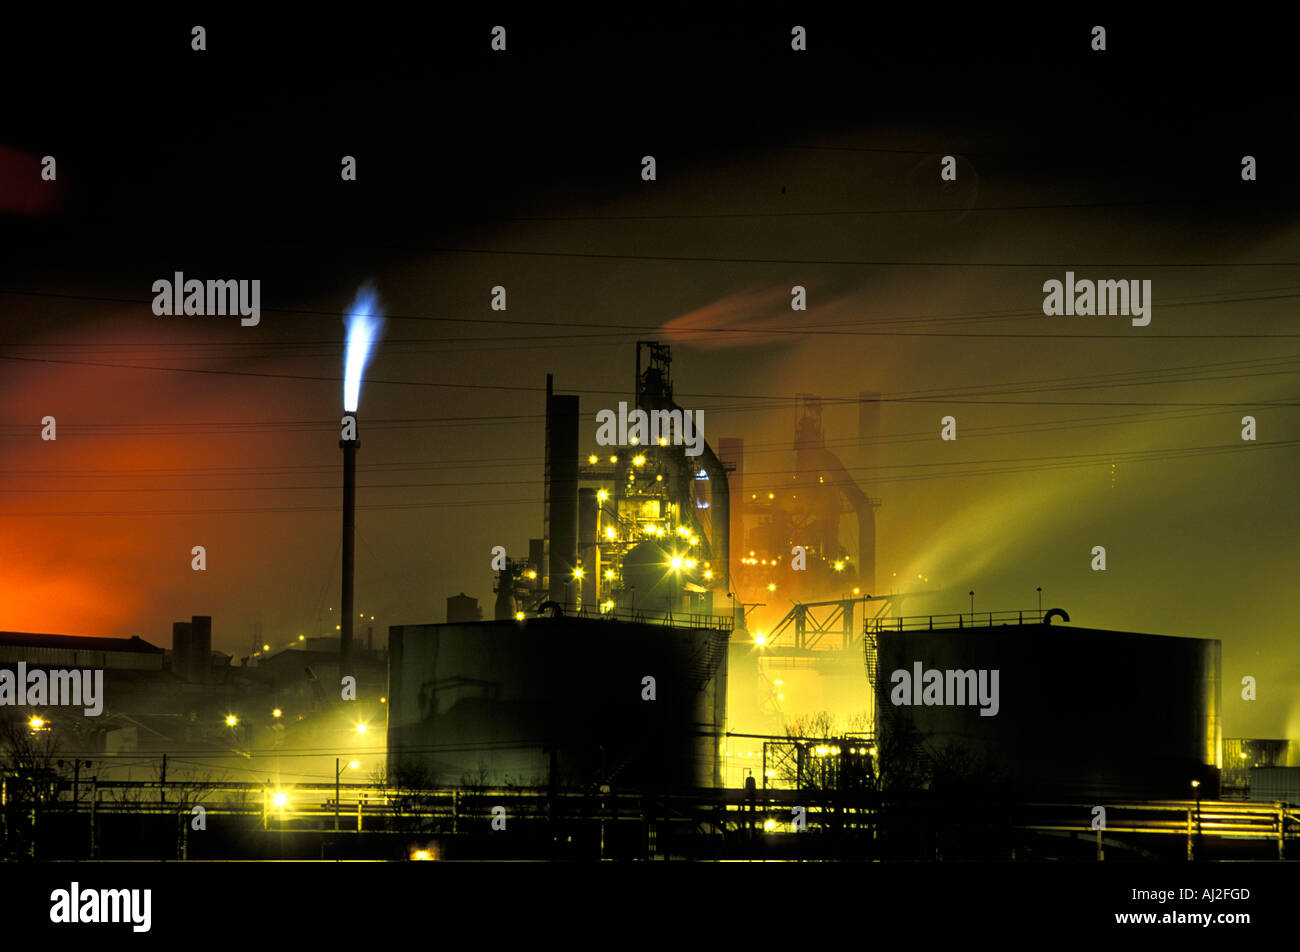 Stati Uniti d'America Indiana Gas flares e pennacchi di vapore e fumo billow da US Steel Works nella città industriale di Gary di notte Foto Stock